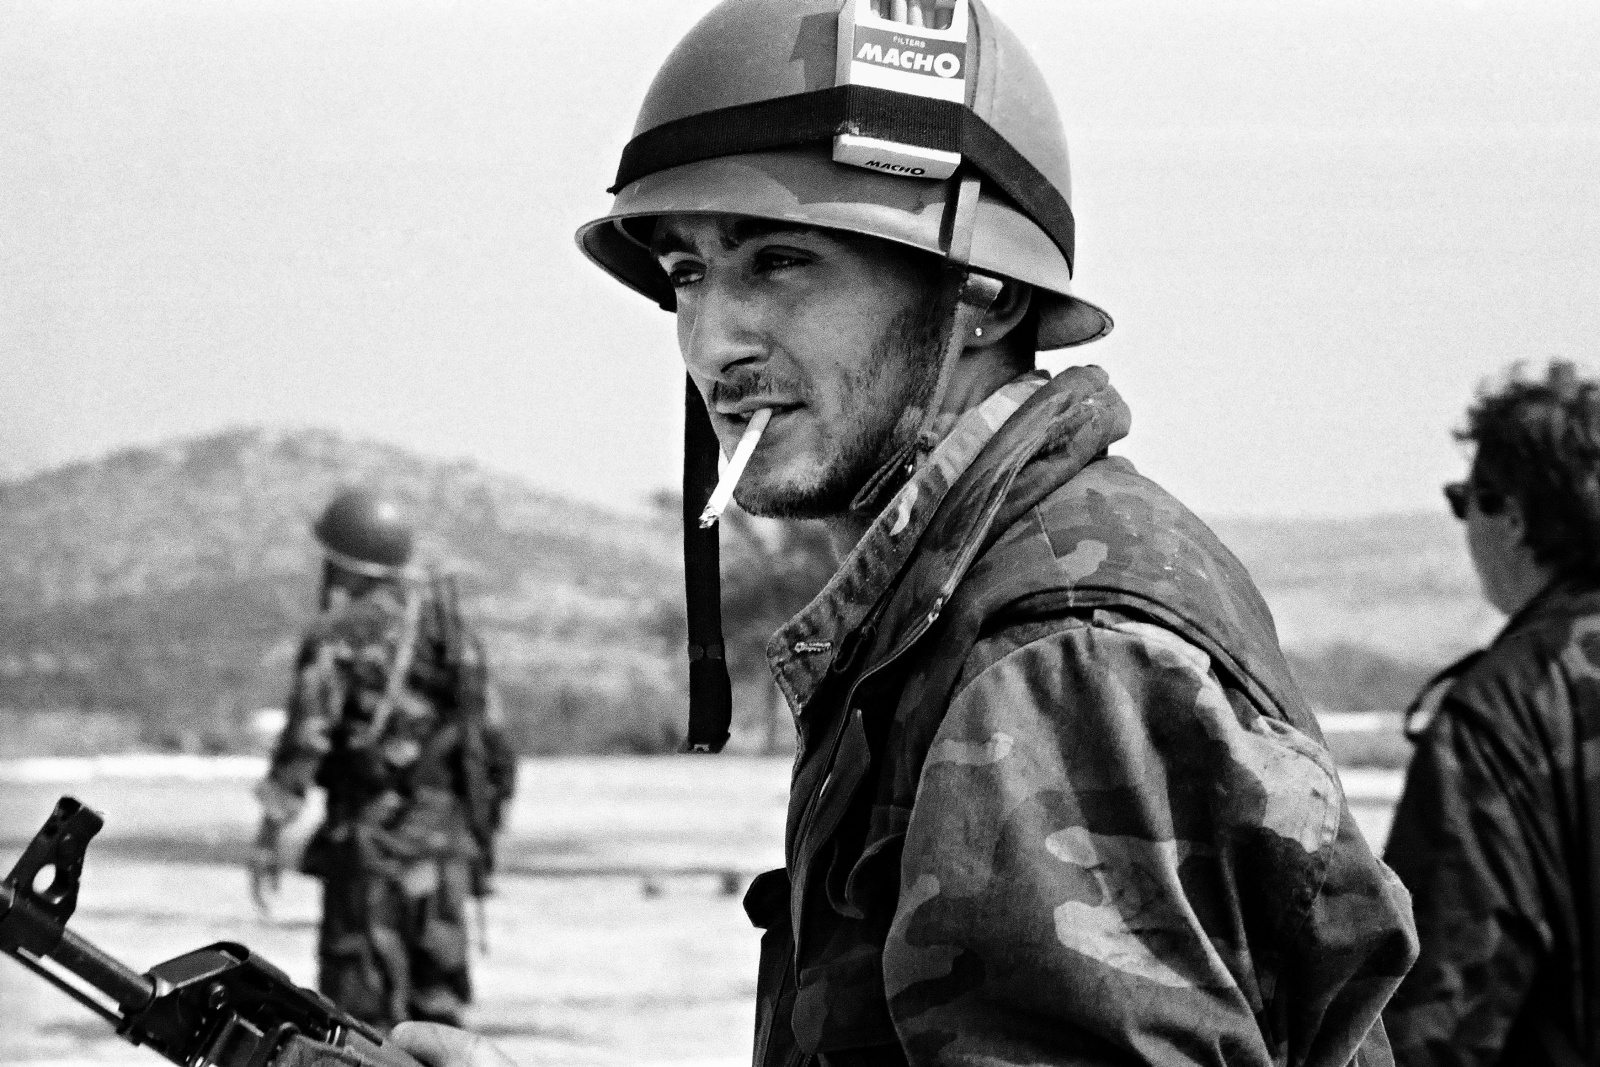 Croazia, Dalmazia 1991 - Militare volontario croato dopo la battaglia per la presa del ponte di Sebenico